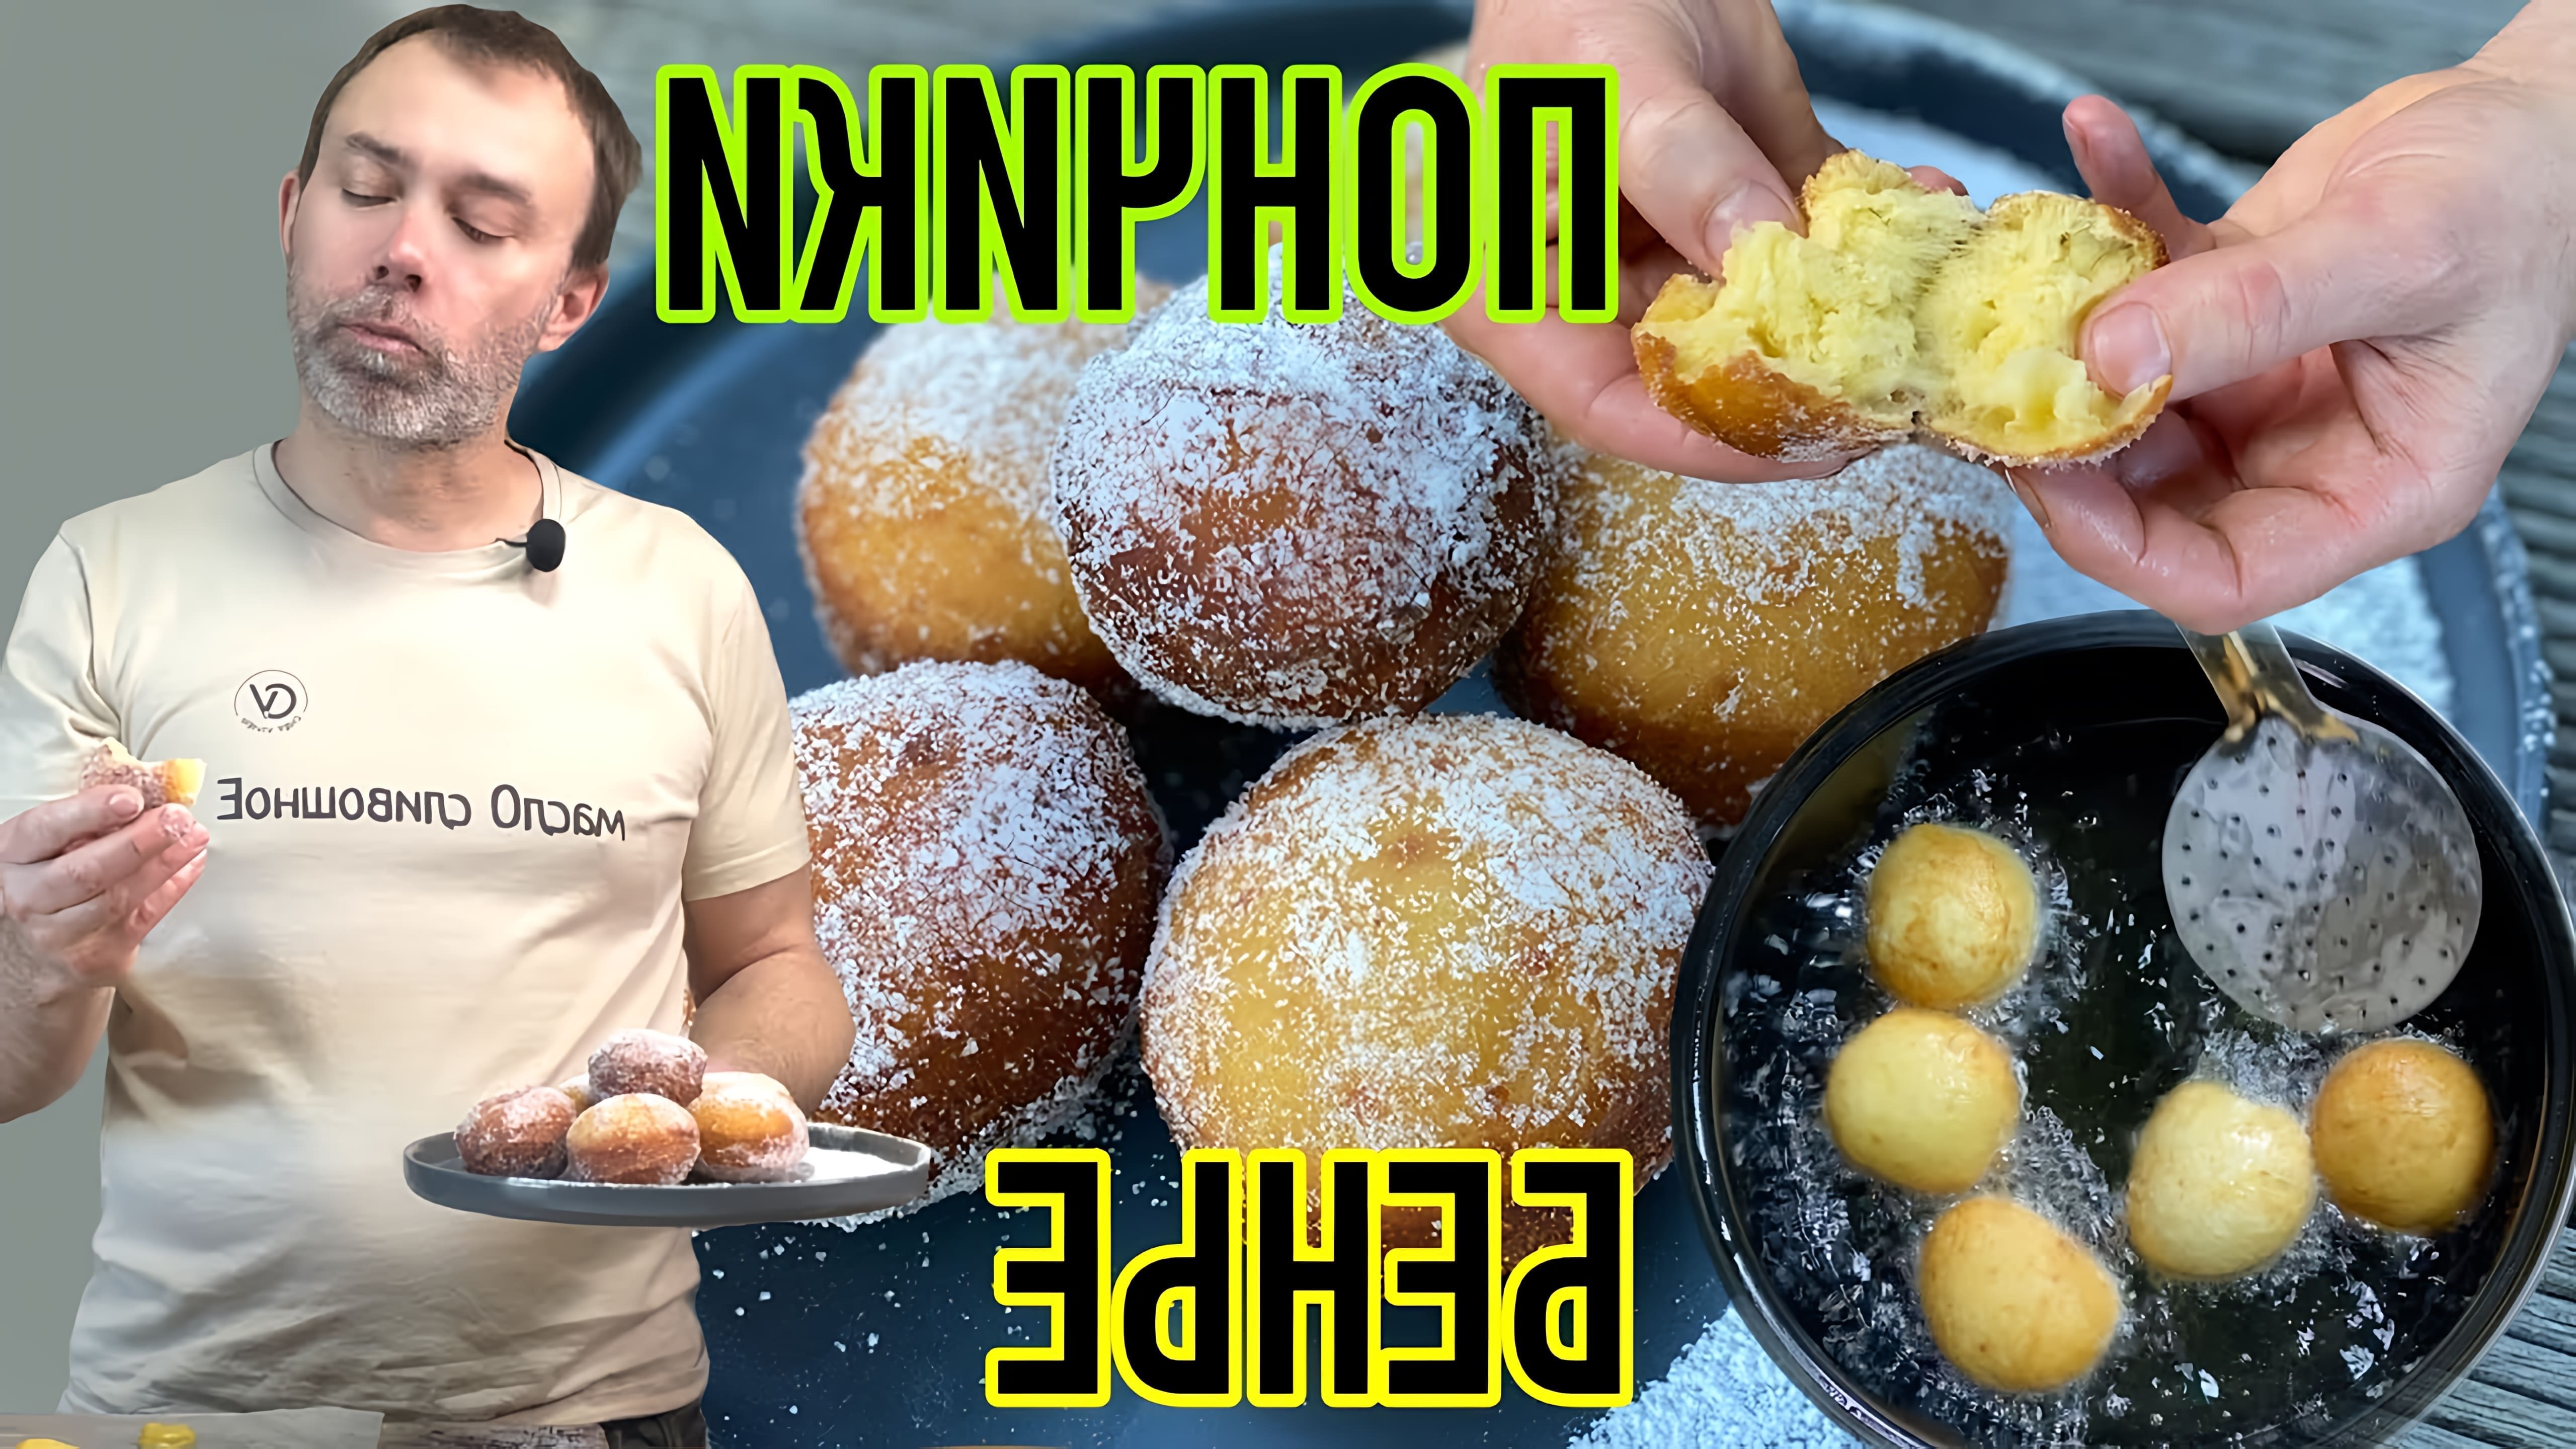 В этом видео шеф-повар демонстрирует процесс приготовления идеального теста для французских пончиков-бенье